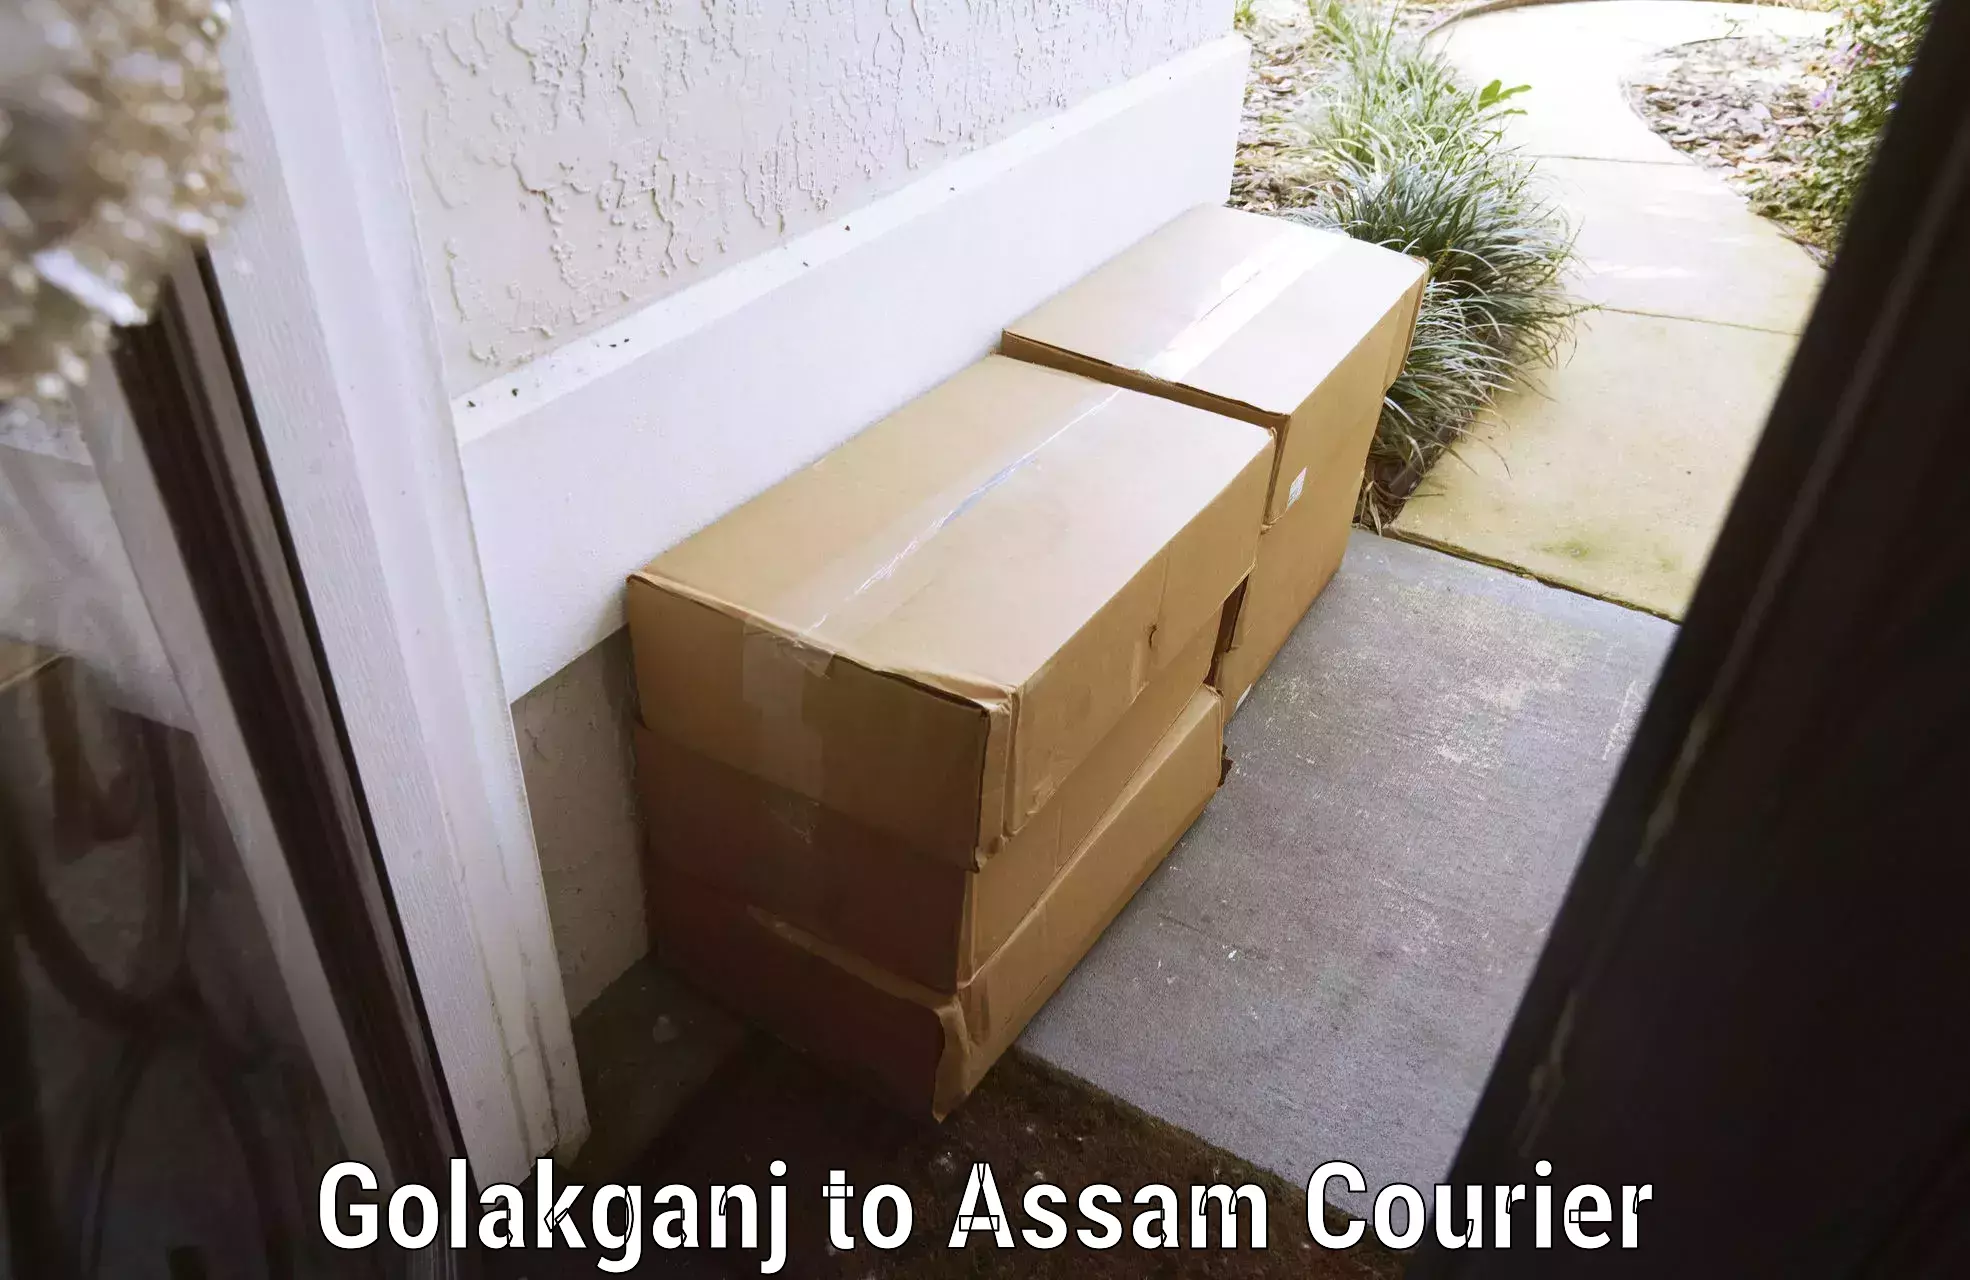 Door-to-door baggage service Golakganj to Biswanath